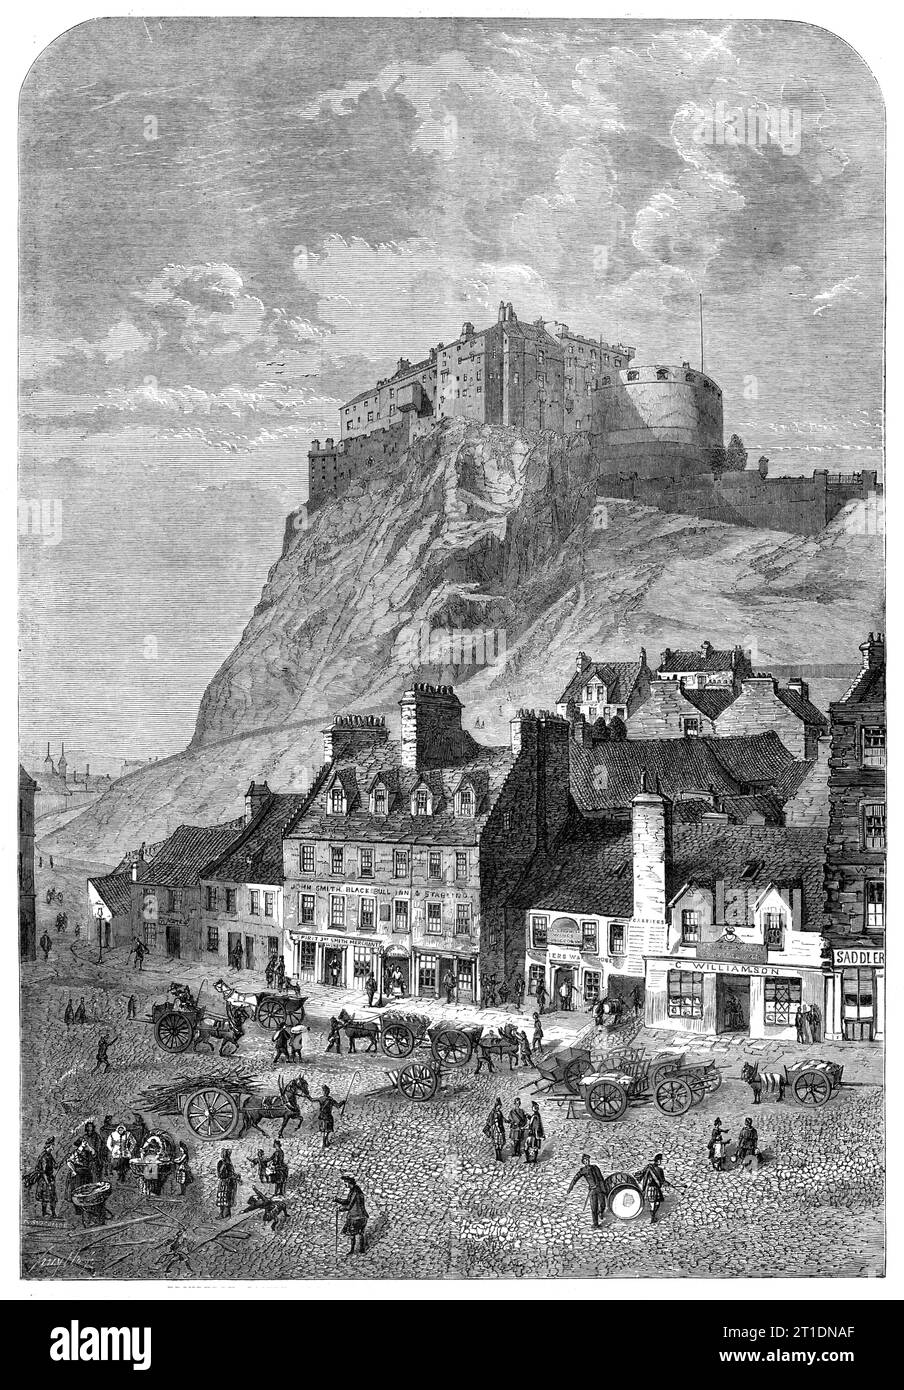 Castello di Edimburgo, dal Corn Exchange, nel Grassmarket, 1860. Il castello è costituito da una serie di fortificazioni irregolari, e anche se, prima dell'invenzione della polvere da sparo, potrebbe essere considerato inespugnabile, ora è un luogo di forza più apparente che reale. Può essere avvicinata solo sul lato orientale. Gli altri tre lati sono molto precipitosi; circa parts...being più che perpendicolari. La sua altitudine è di 383 metri sopra il livello del mare, e da varie parti delle fortificazioni si può ottenere una magnifica vista del paese circostante. Contiene la sistemazione Foto Stock